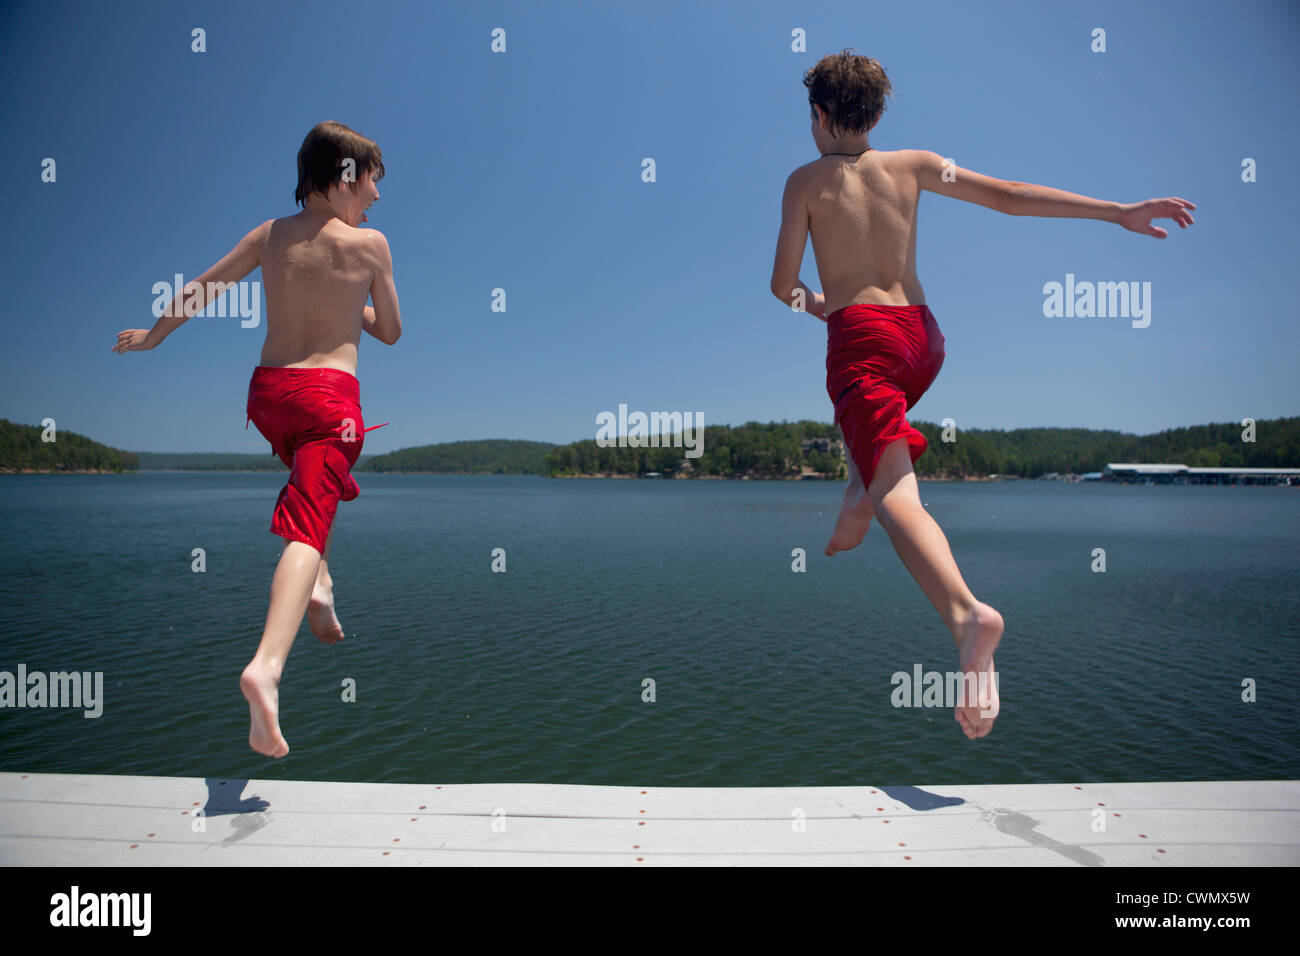 USA, Ohio, Murfreesboro, deux frères (8-9, 12-13) sauter dans l'eau Banque D'Images